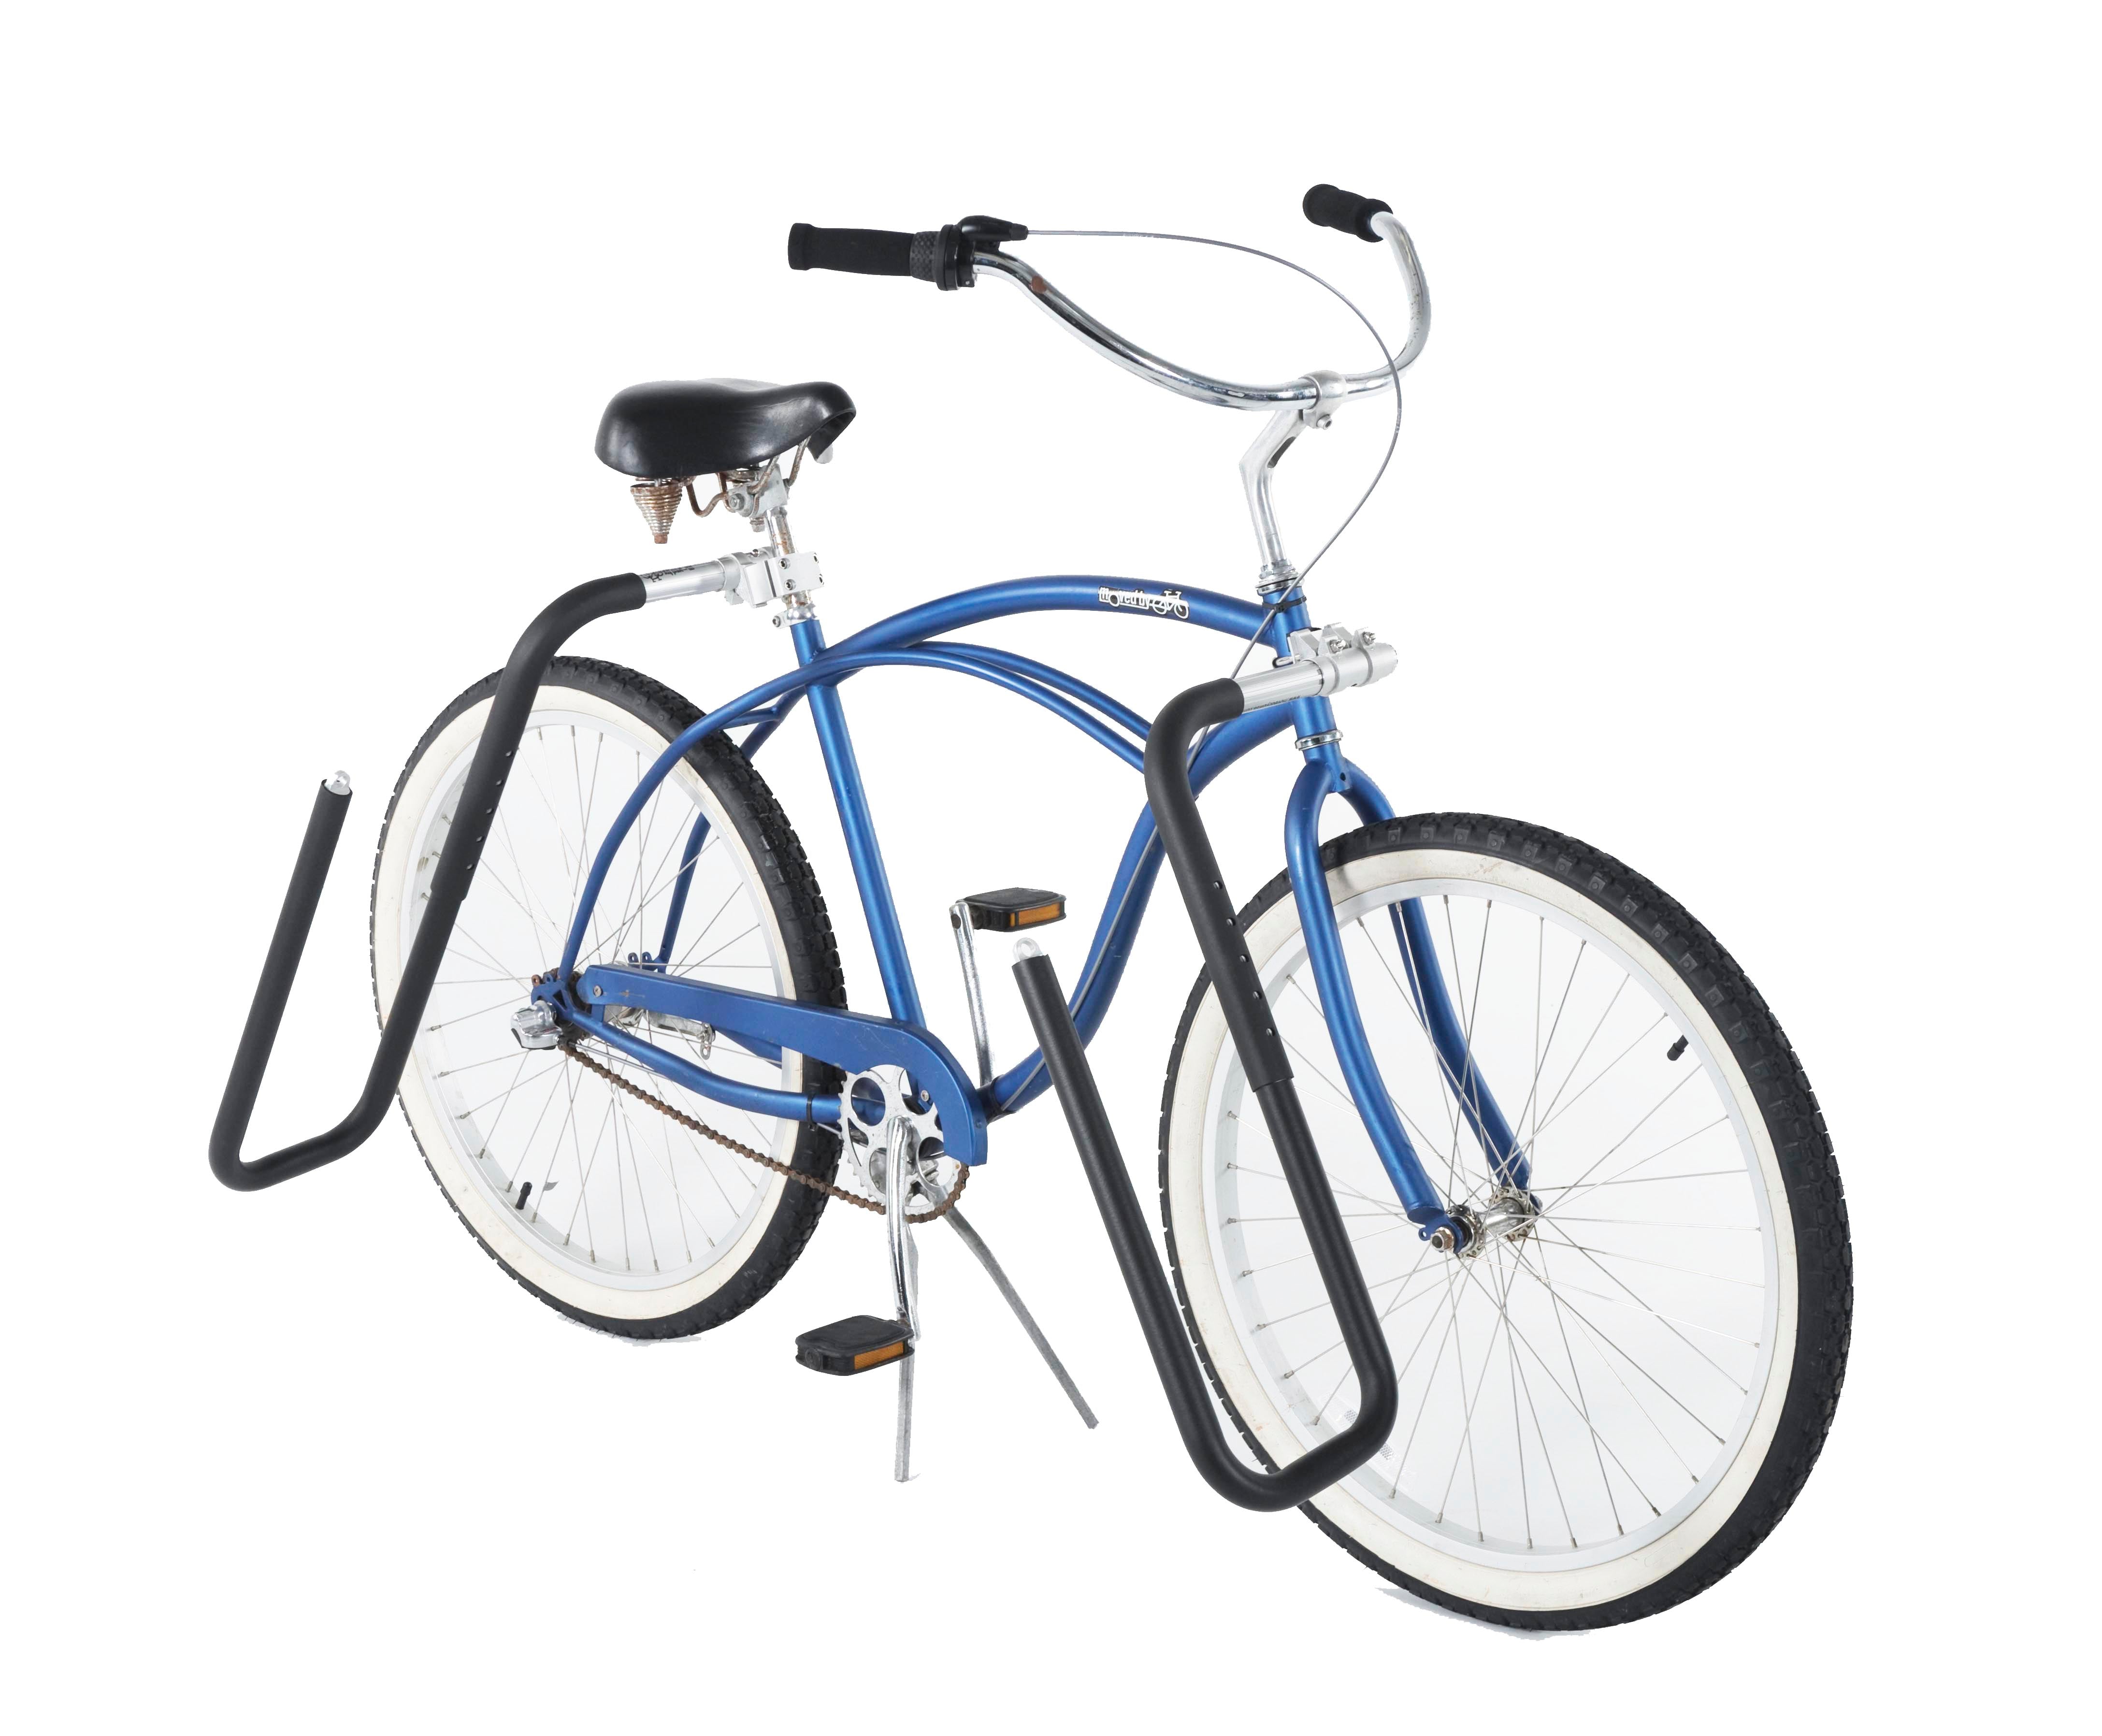 A blue bike with an MBB longboard rack